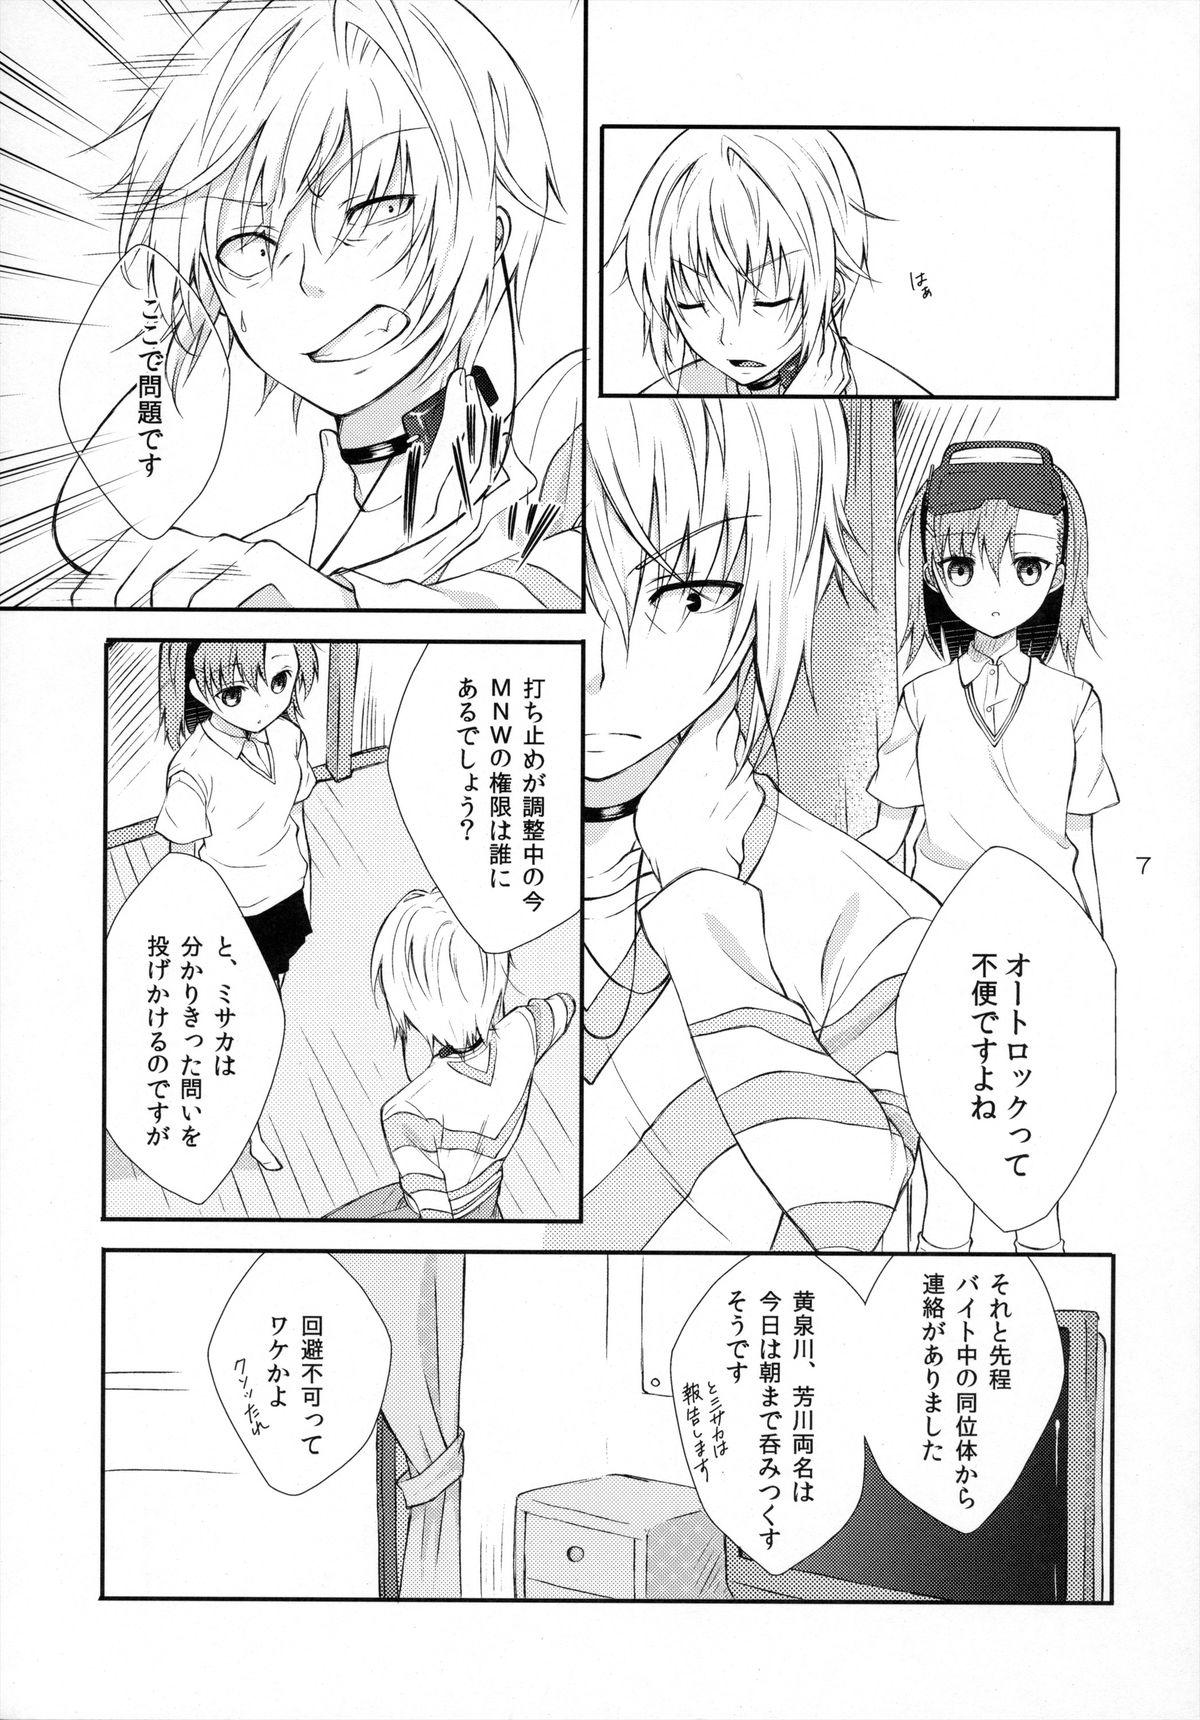 Students Syooga nee daro, Suki nan dakara. - Toaru majutsu no index Ex Girlfriend - Page 6